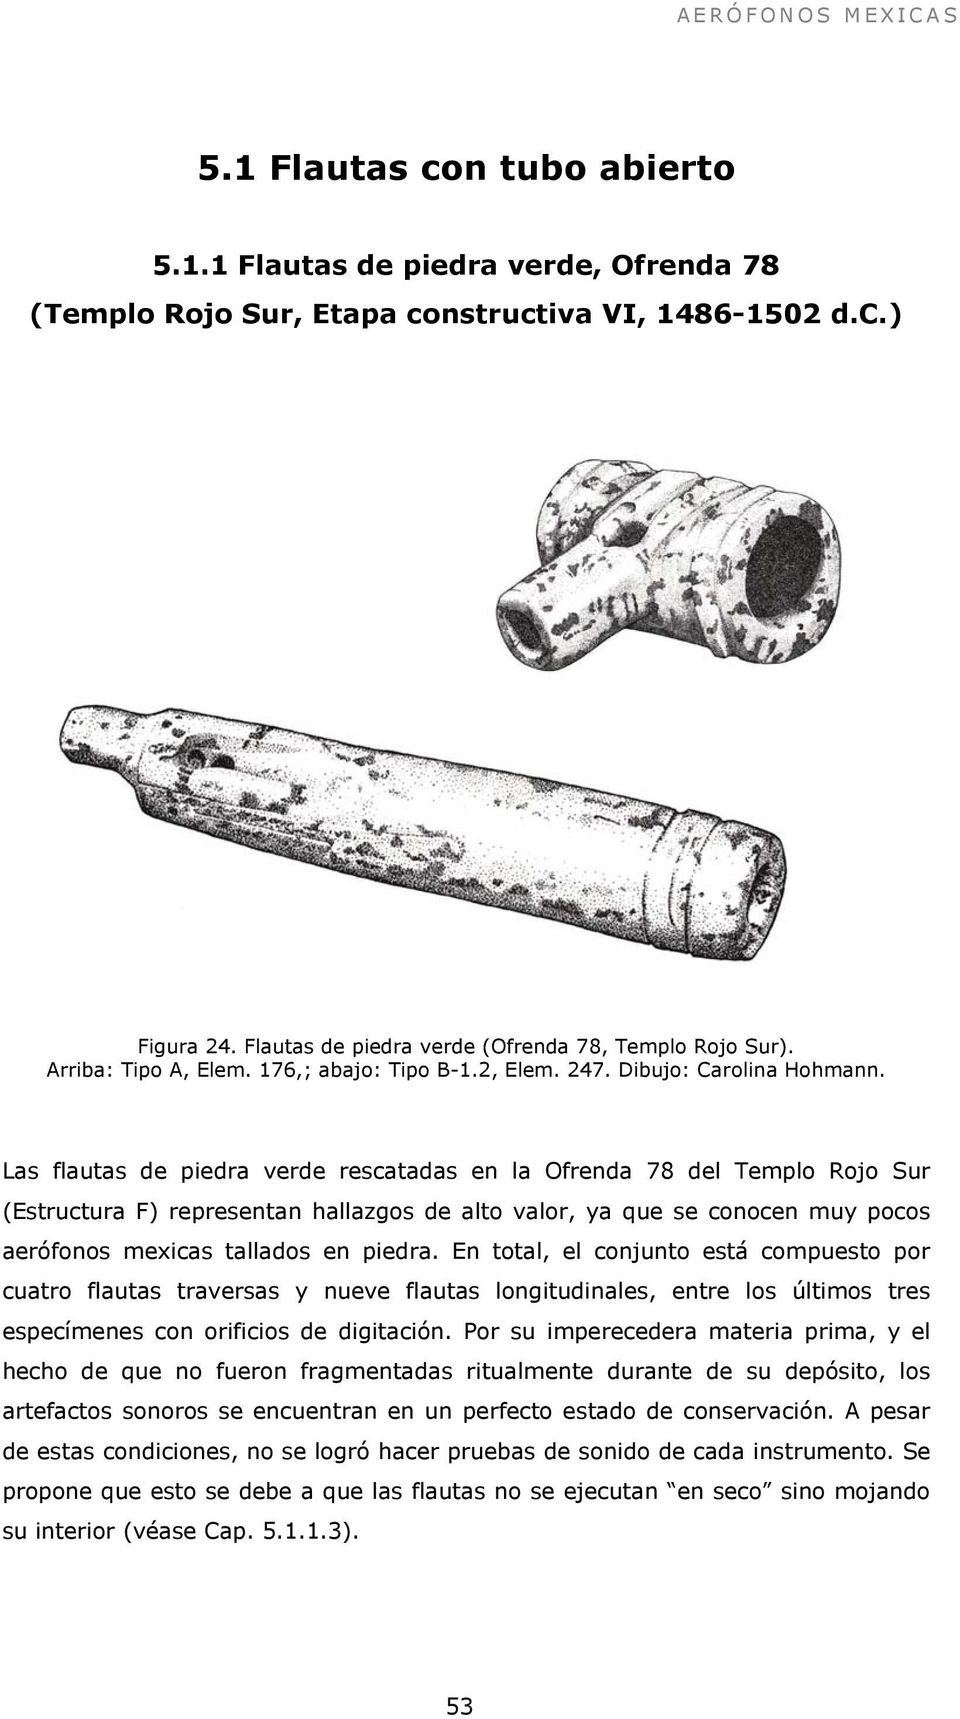 Las flautas de piedra verde rescatadas en la Ofrenda 78 del Templo Rojo Sur (Estructura F) representan hallazgos de alto valor, ya que se conocen muy pocos aerófonos mexicas tallados en piedra.